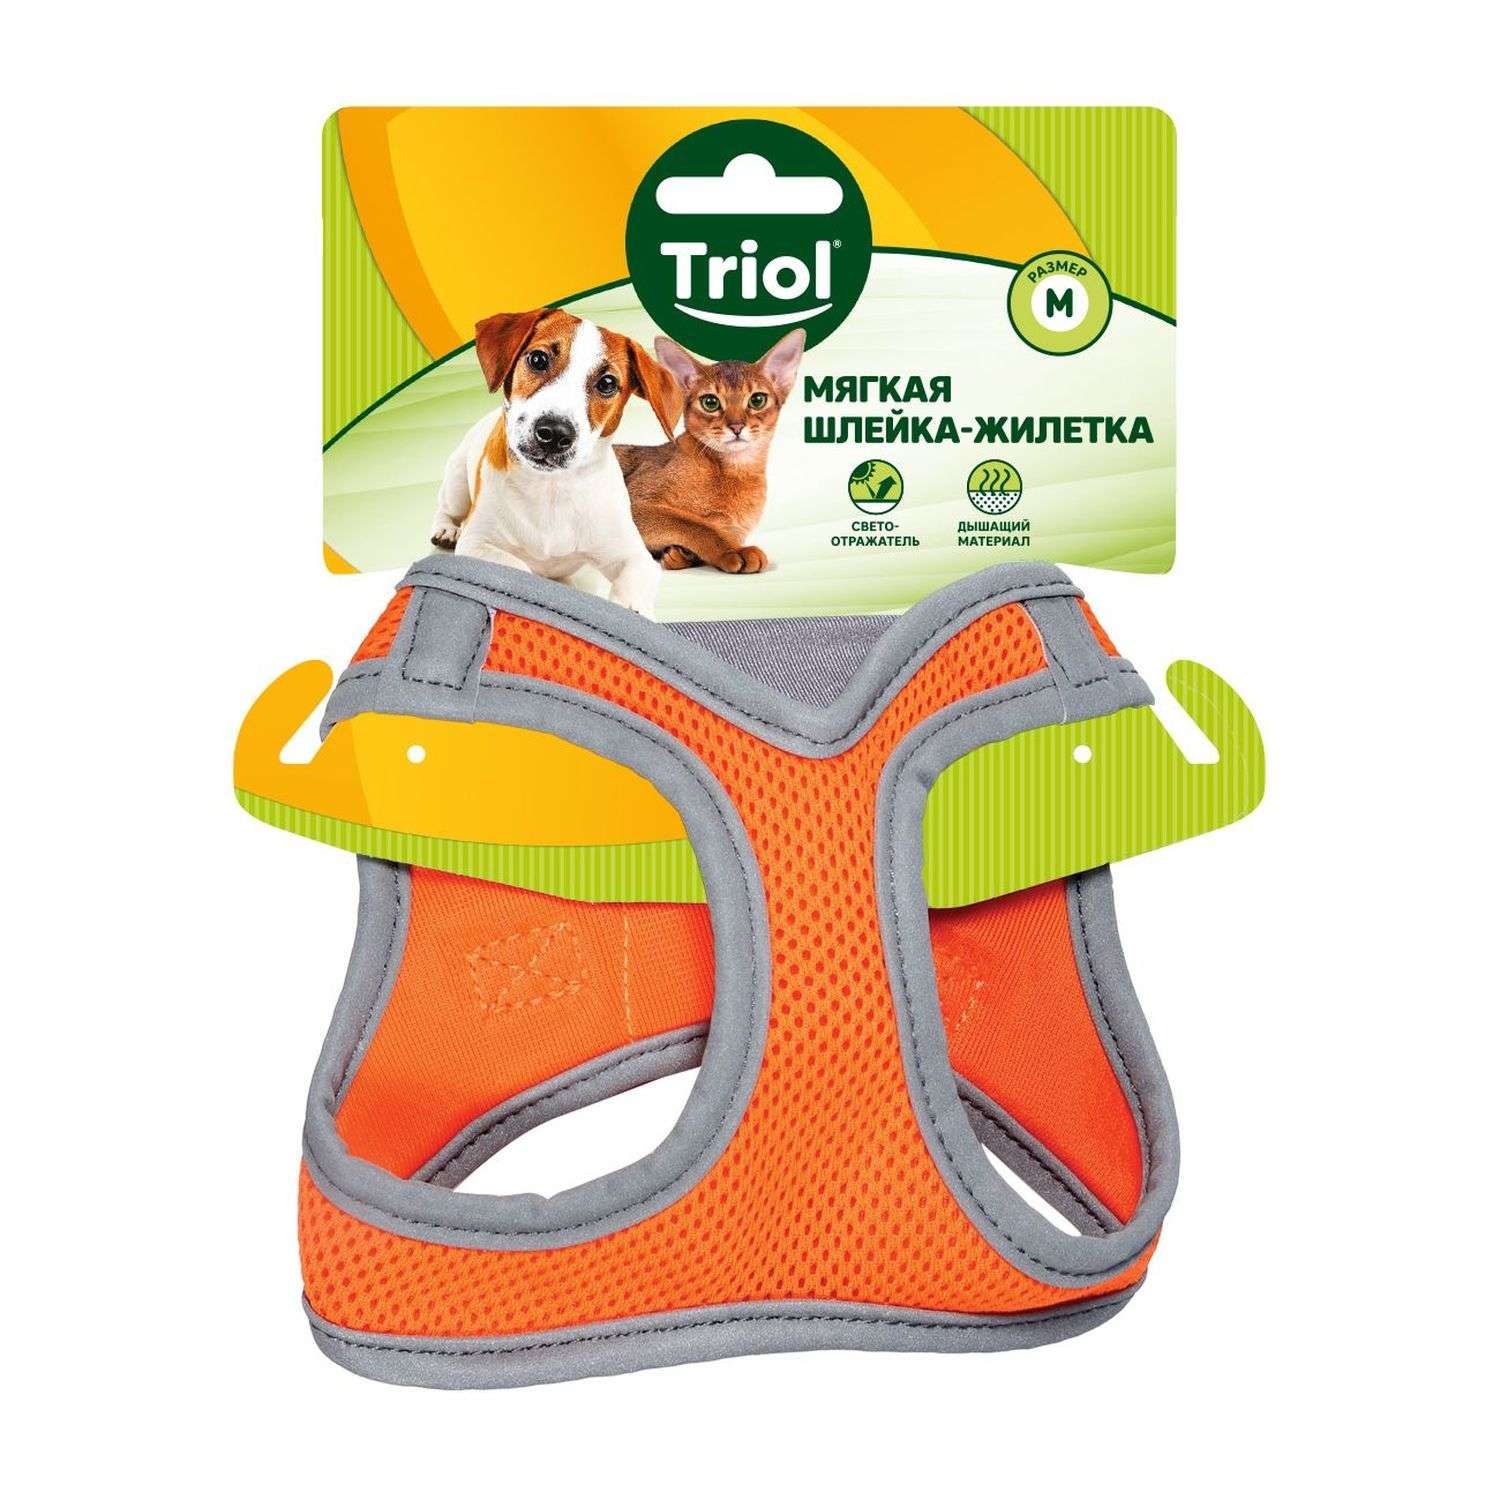 Шлейка-жилетка для собак Triol мягкая M Оранжевый - фото 2